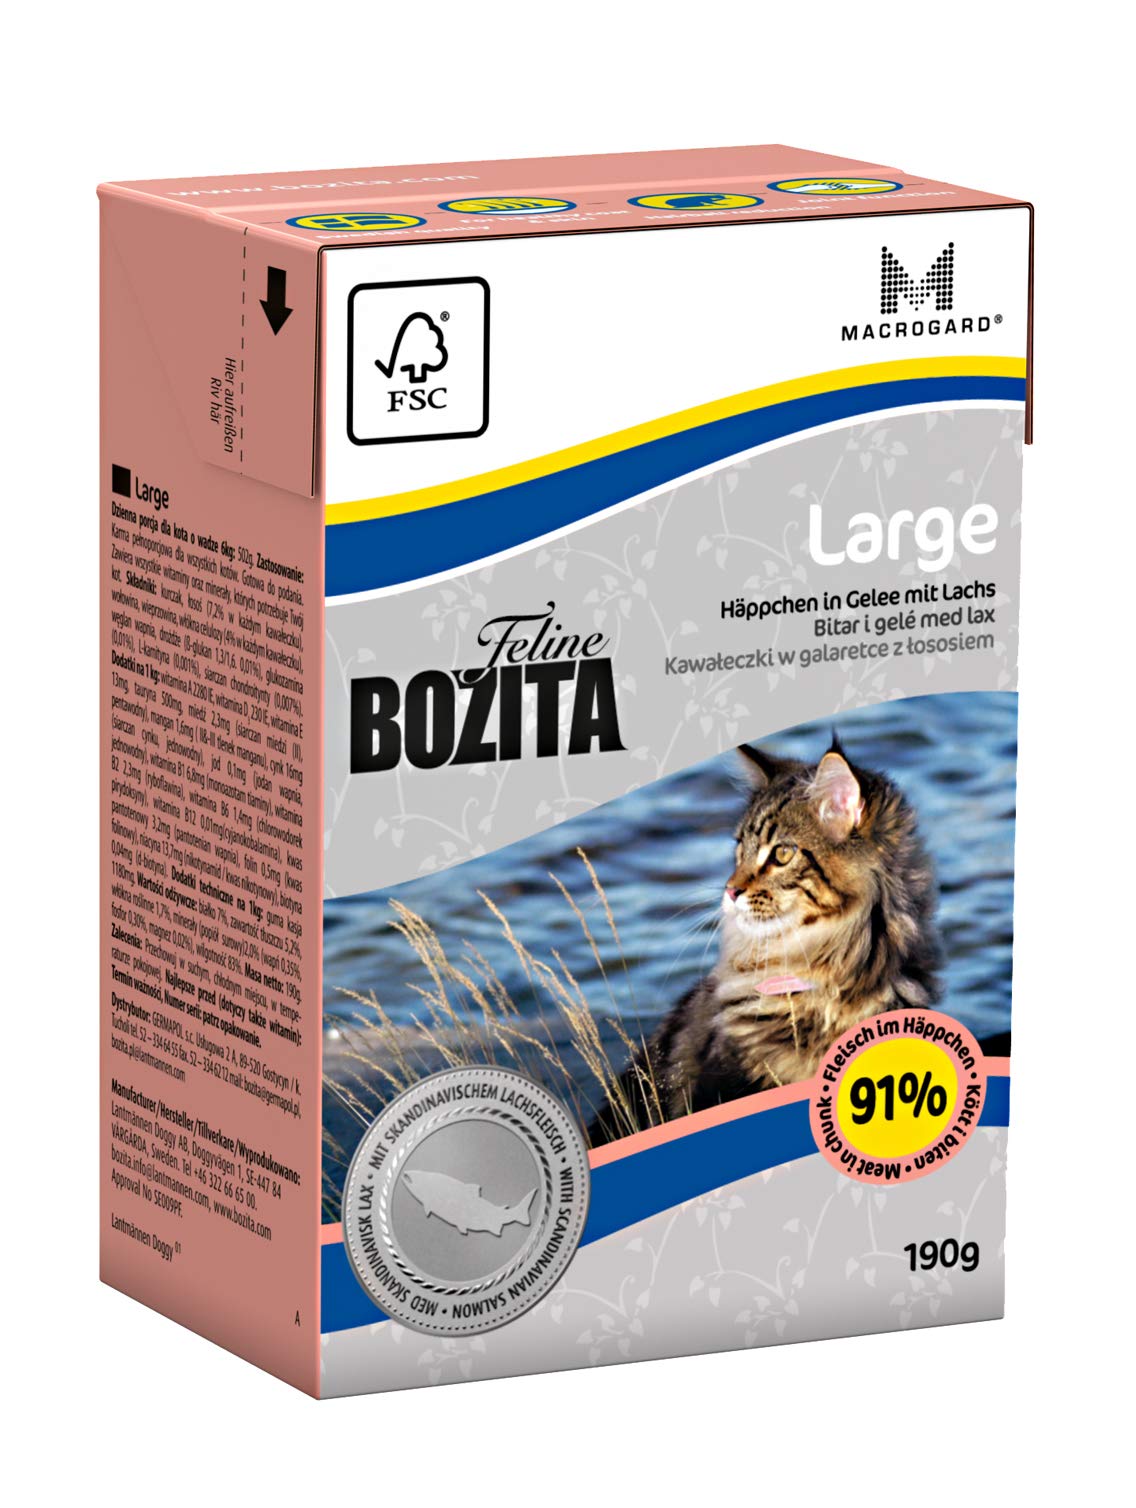 BOZITA Häppchen in Gelee Nassfutter Large - 16 x 190 g - nachhaltig produziertes Katzenfutter für erwachsene Katzen großer Rassen - Alleinfuttermittel